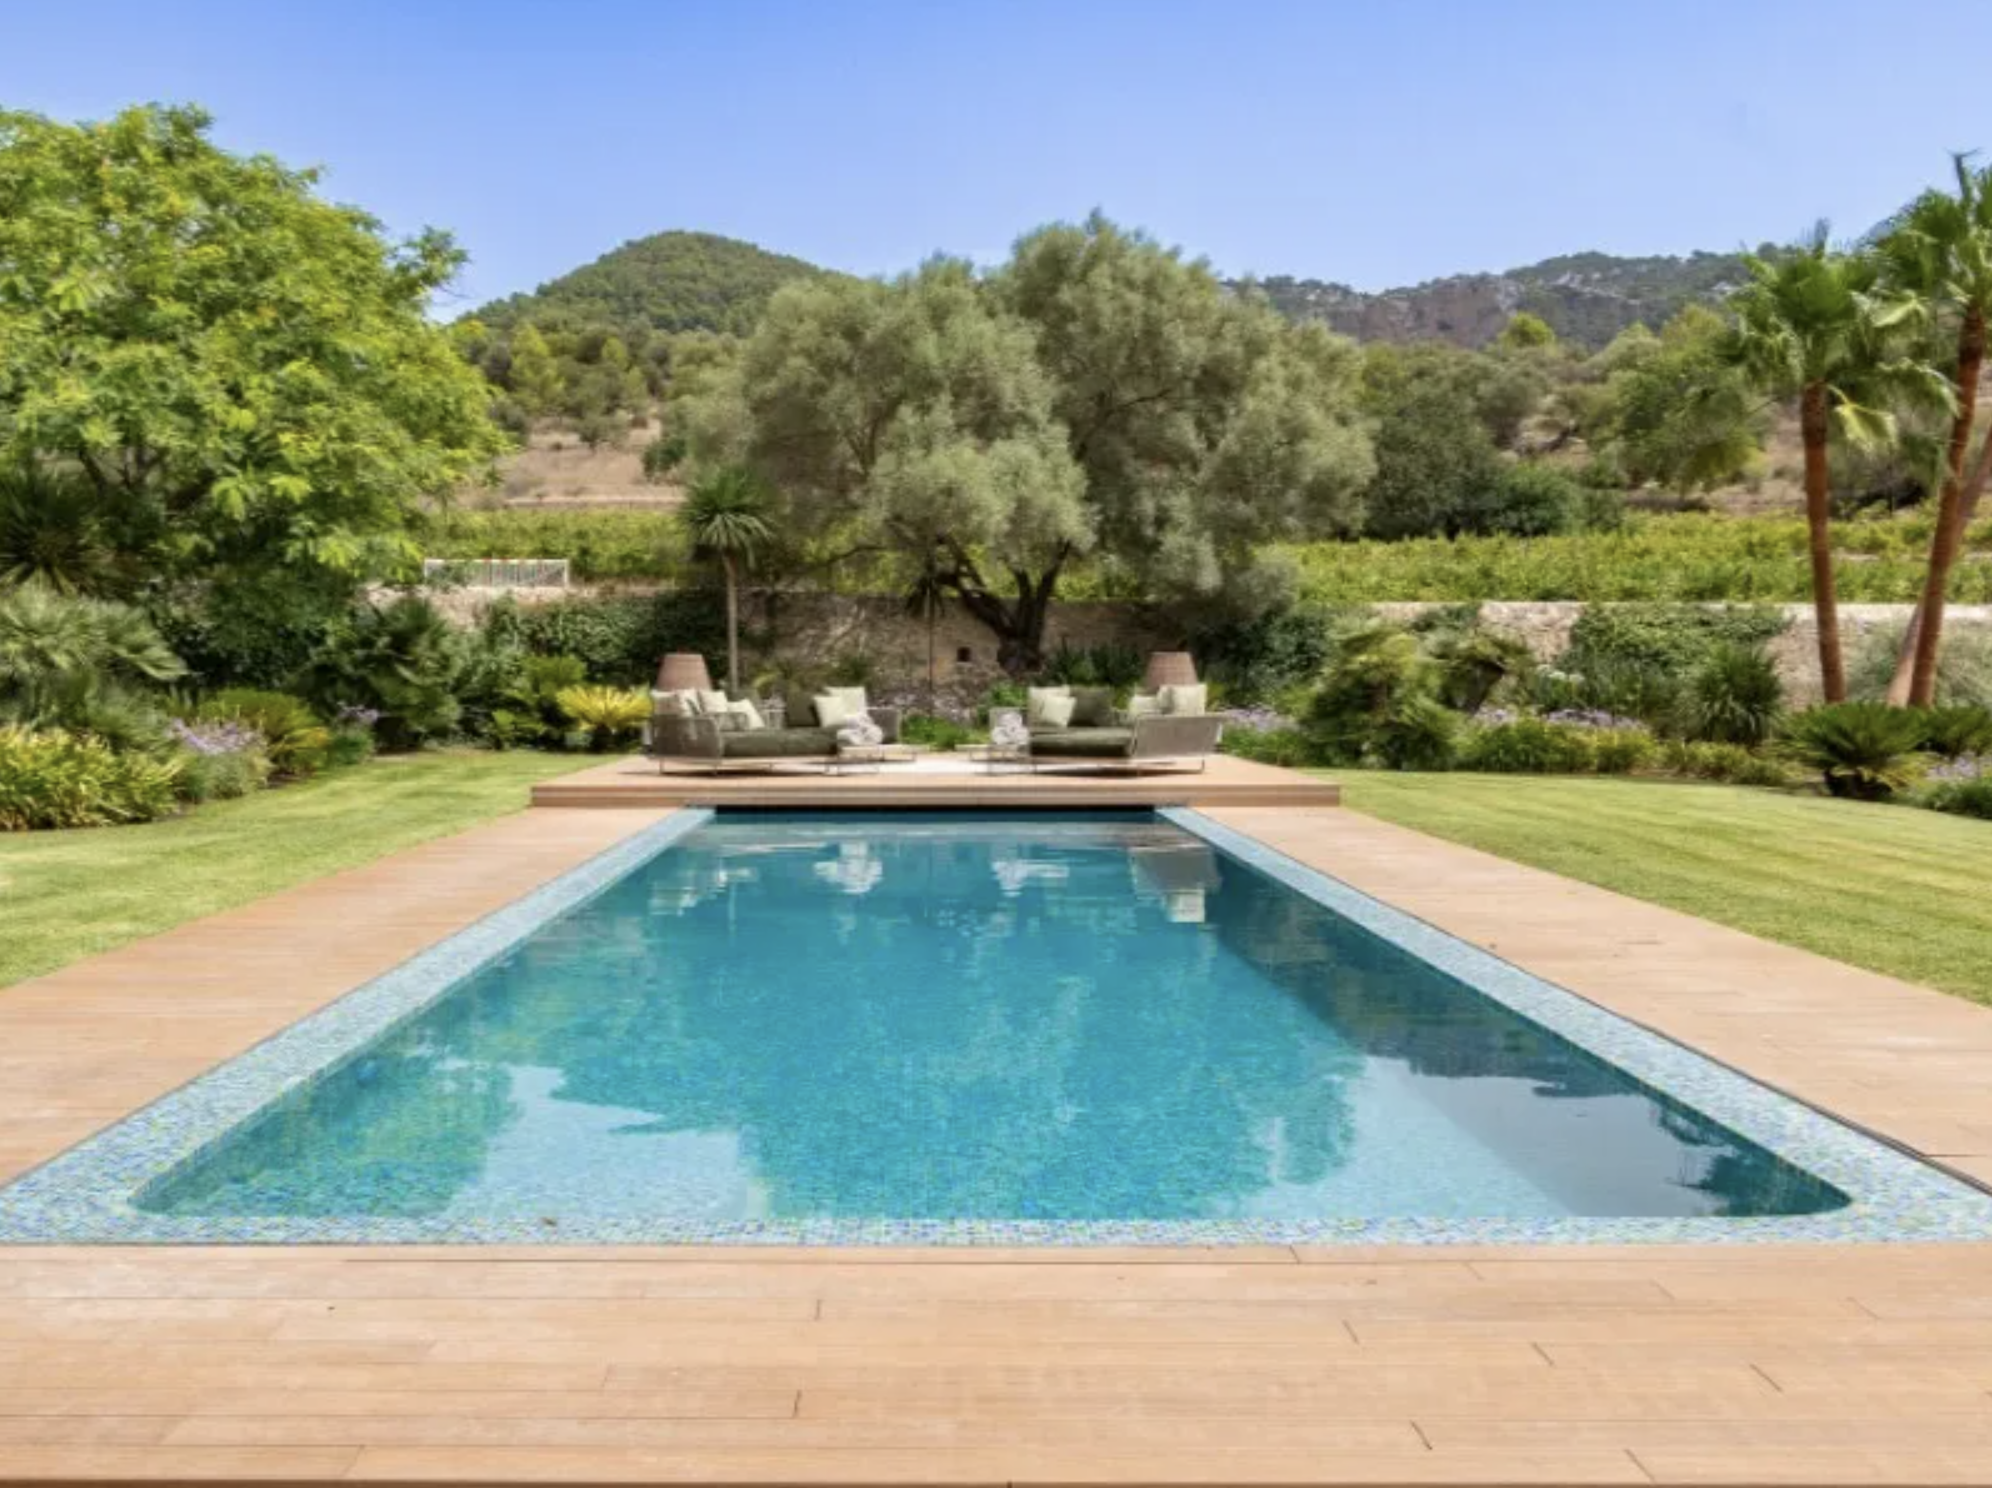 Francis York Luxurious Estate in Countryside Near Palma de Mallorca 00016.png